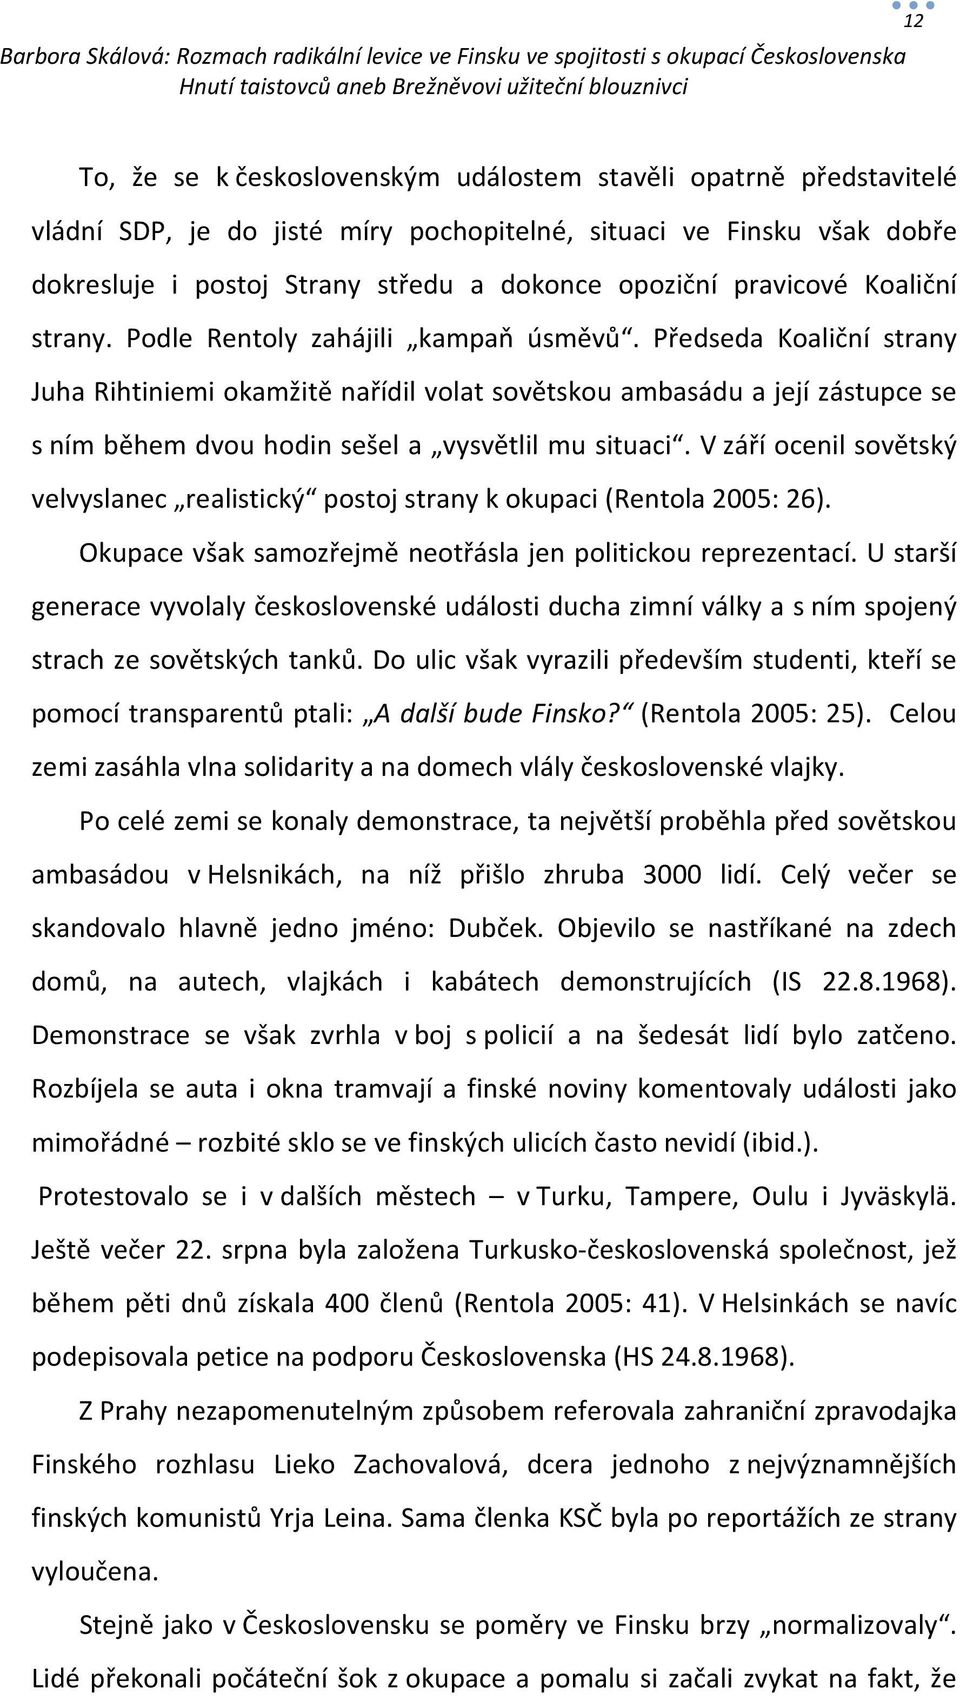 Předseda Koaliční strany Juha Rihtiniemi okamžitě nařídil volat sovětskou ambasádu a její zástupce se s ním během dvou hodin sešel a vysvětlil mu situaci.